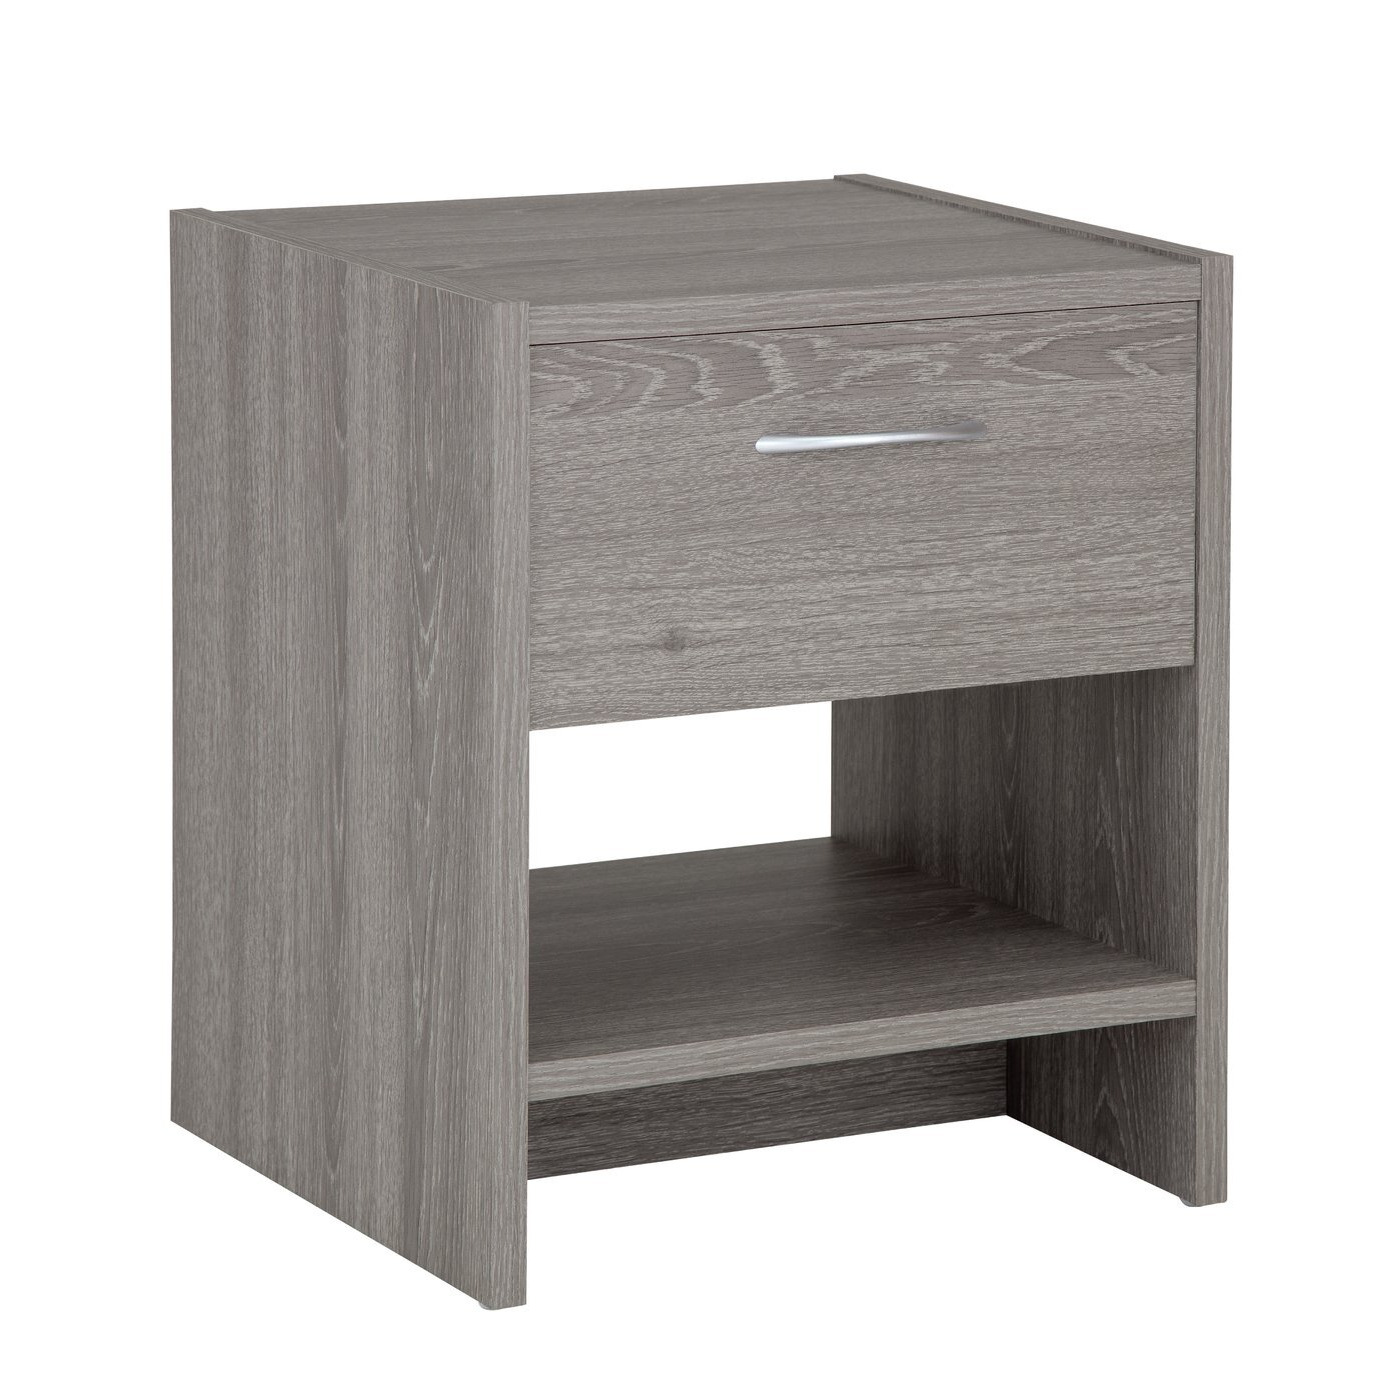 Argos Home Seville 1 Drawer Bedside Table - Grey Oak Effect - image 1